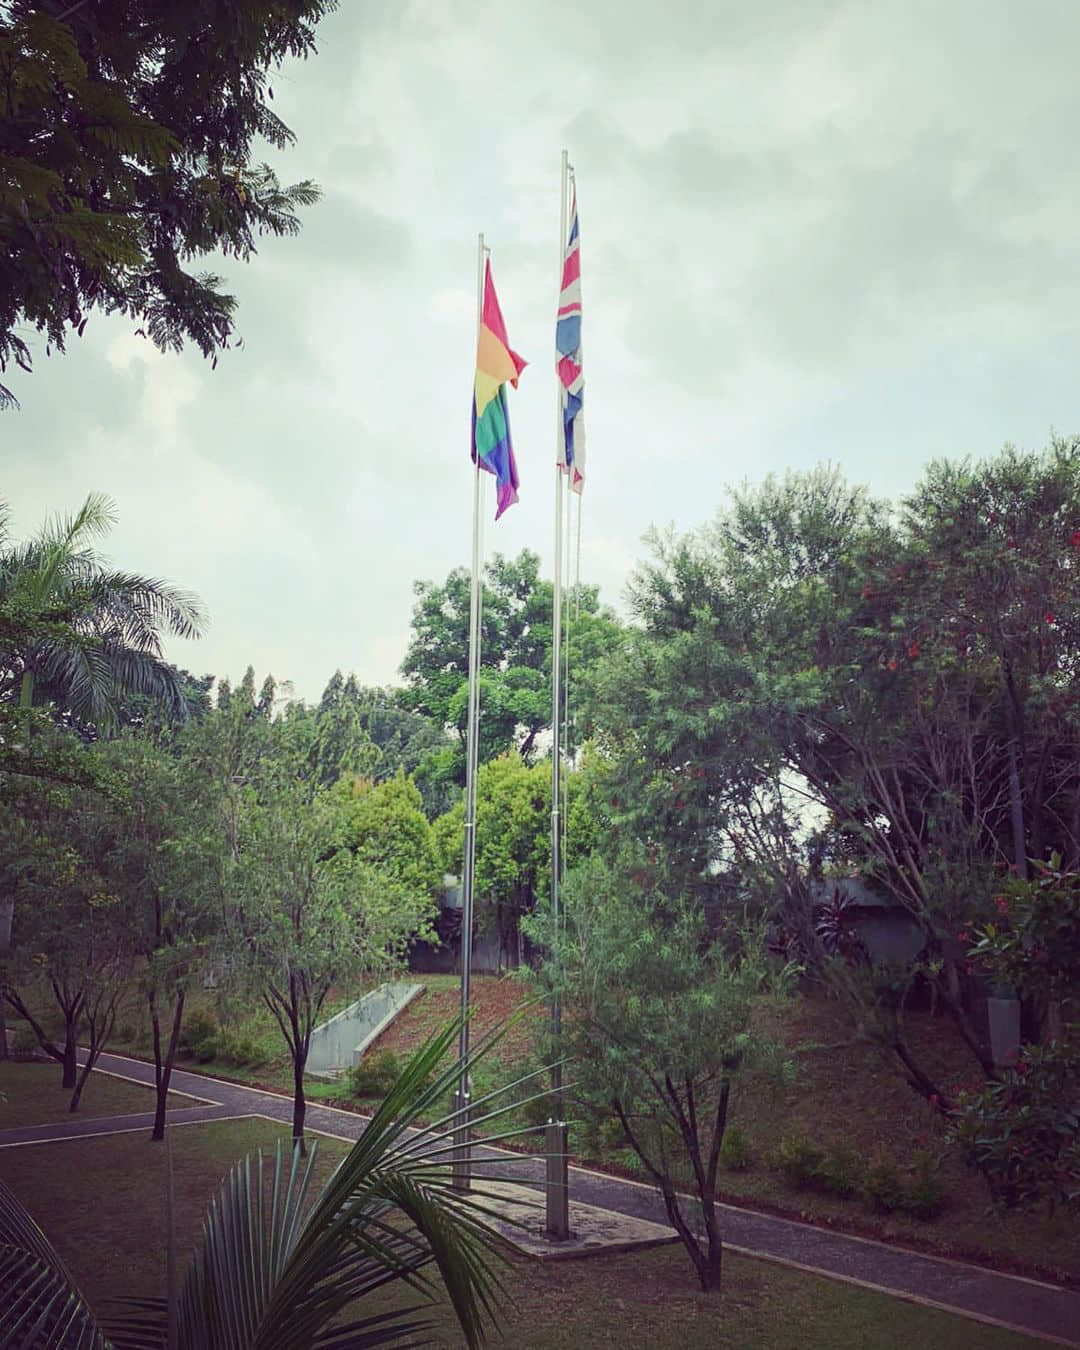 英國駐印尼大使館掛出彩虹旗 印尼政府：「請說明一下這個『無理』的舉動。」-NICEGAY